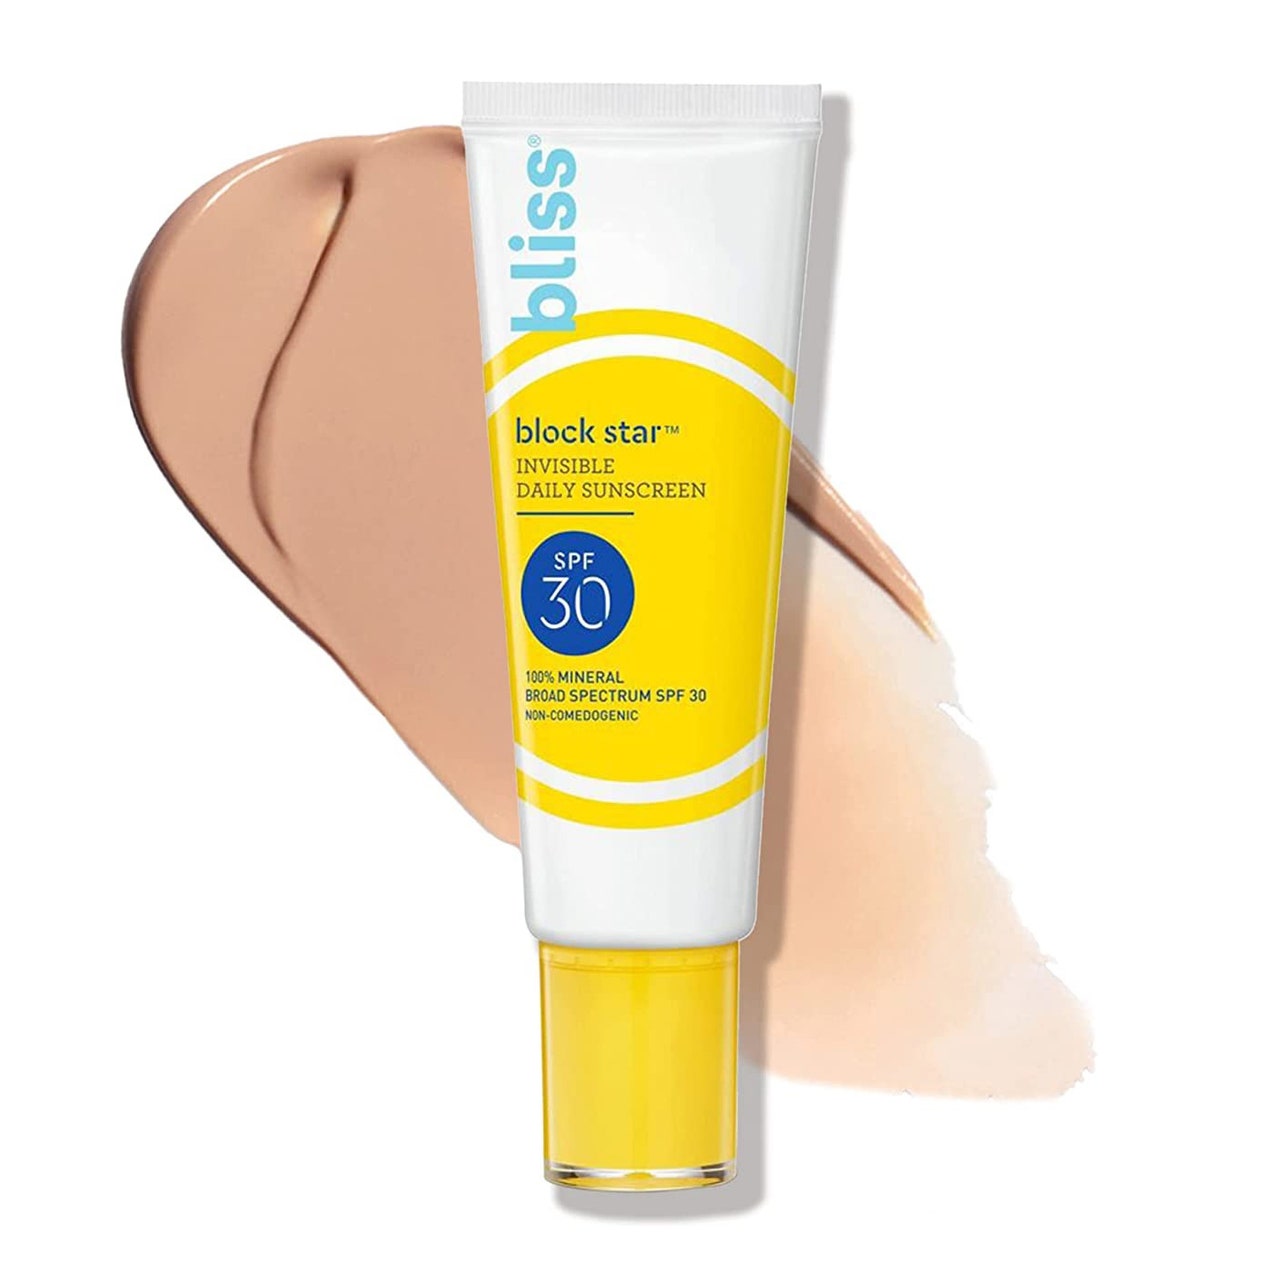 Bliss Blockstar Tinted Face Sunscreen gelbe und weiße Tube mit getöntem Sonnenschutzstreifen auf weißem Hintergrund